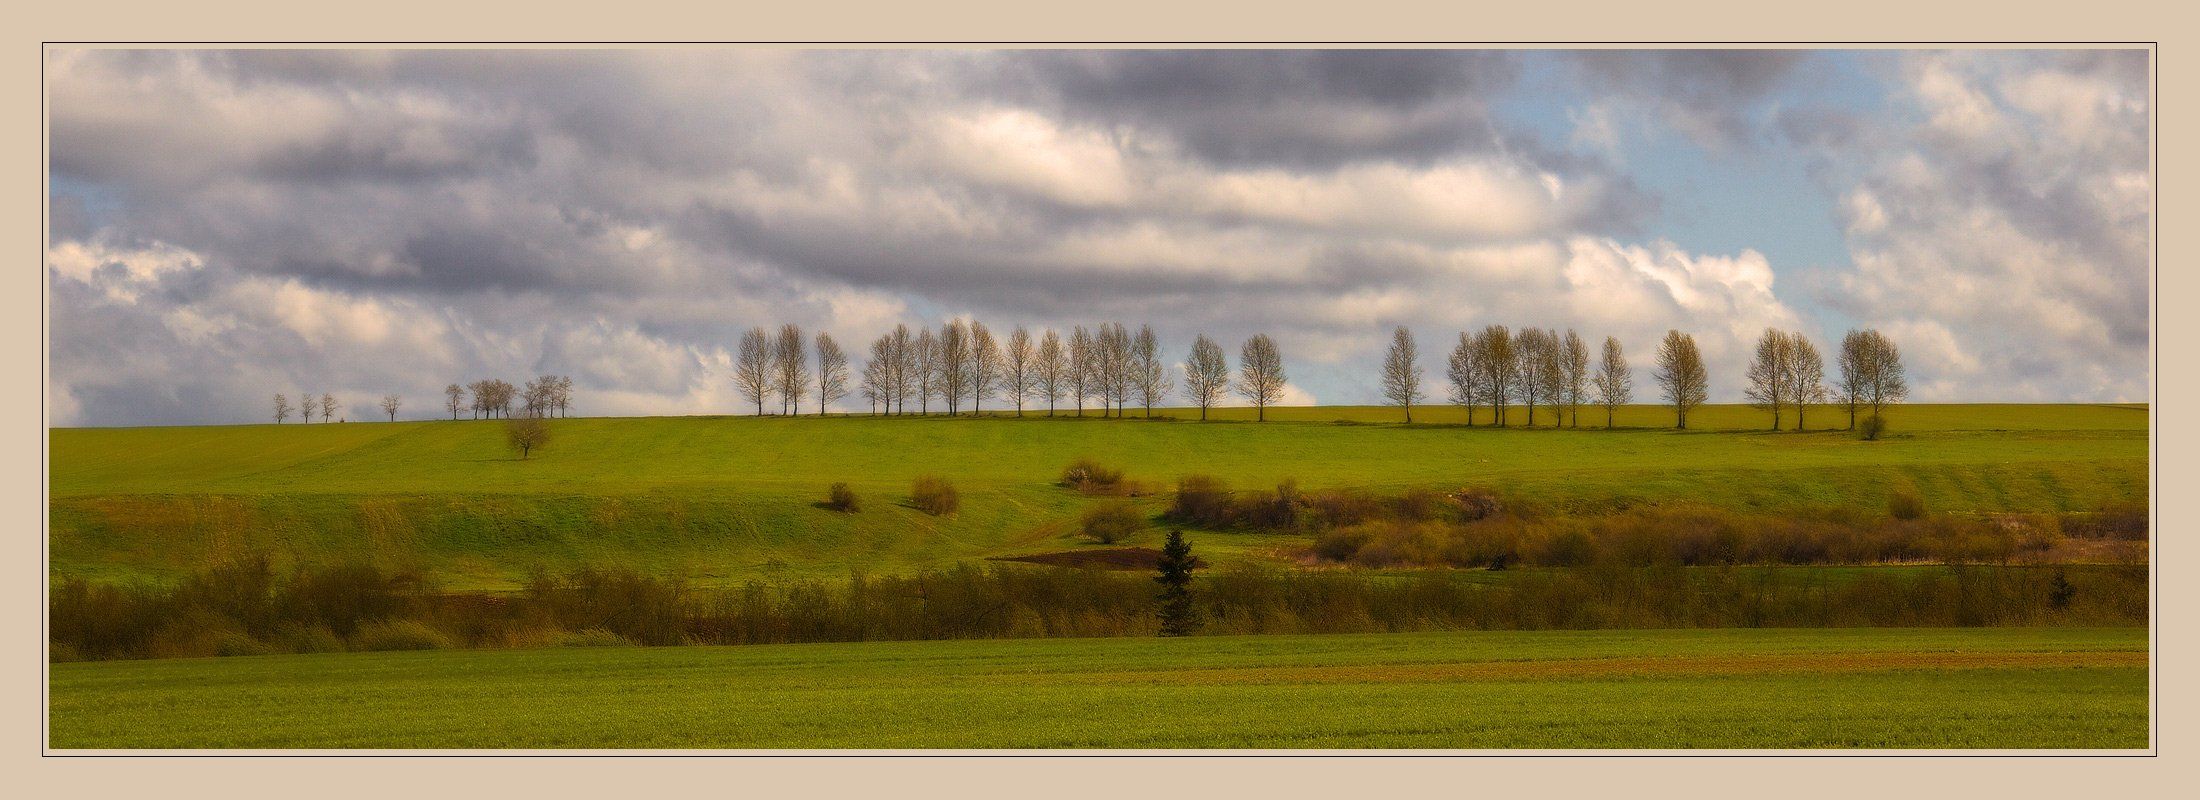 пейзаж, поля, деревья, небо, чехия, Oleg Dmitriev